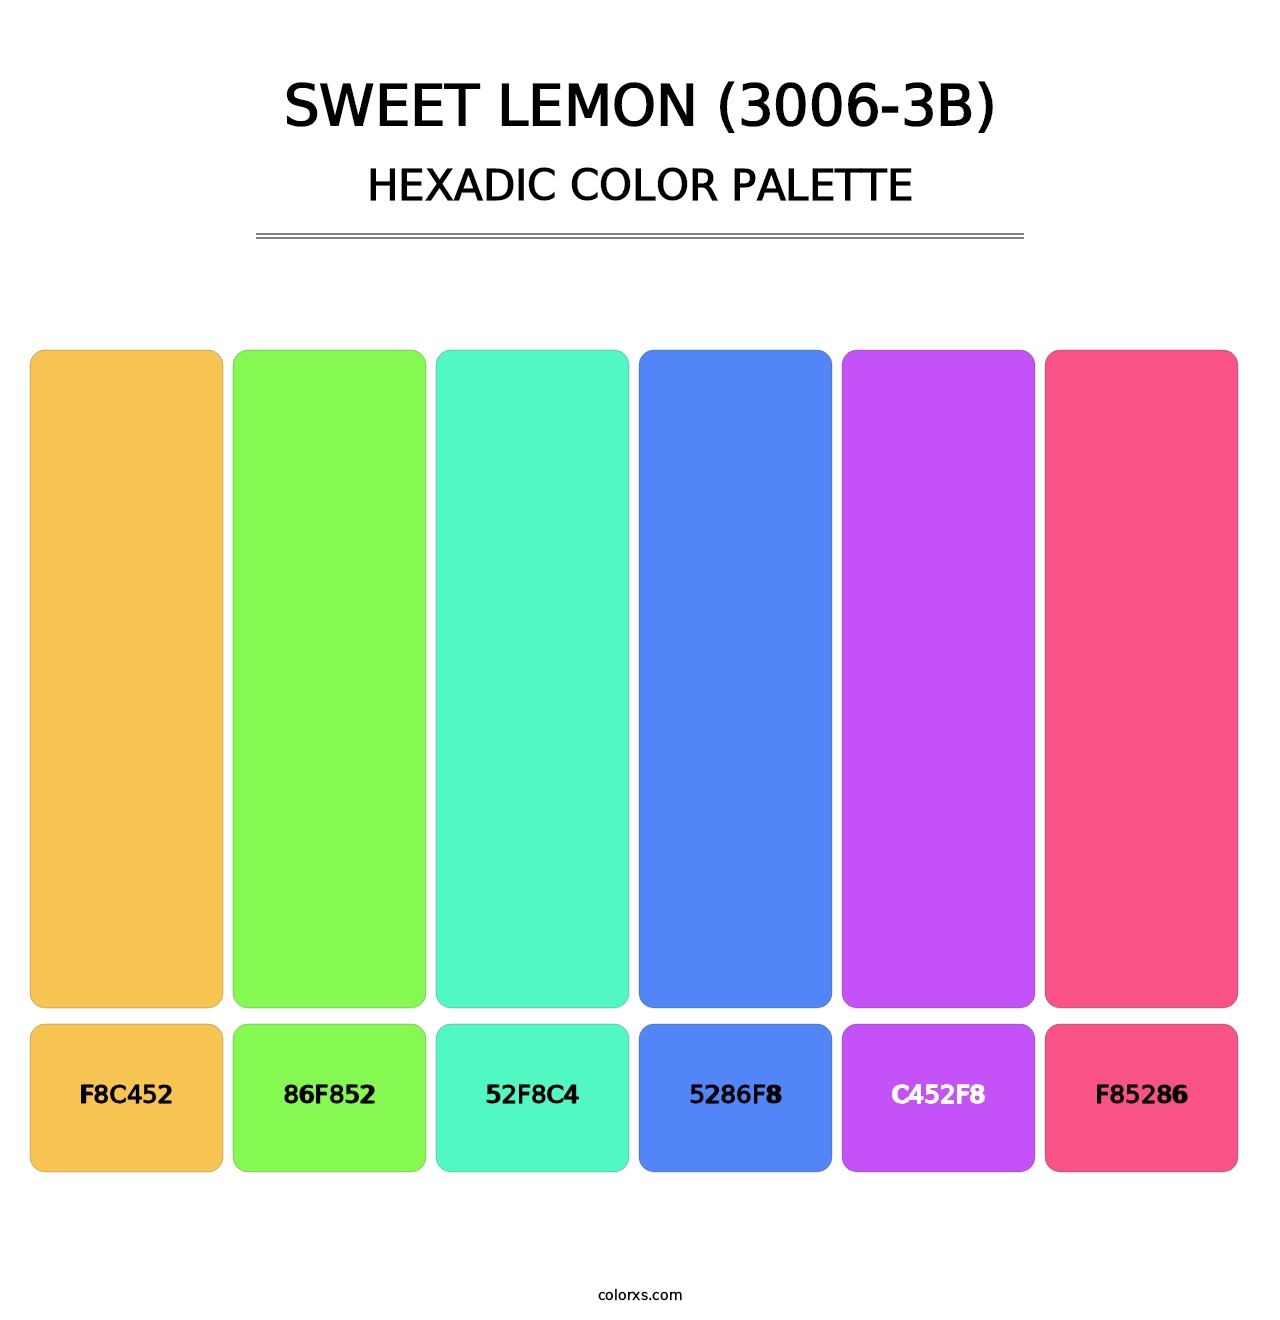 Sweet Lemon (3006-3B) - Hexadic Color Palette